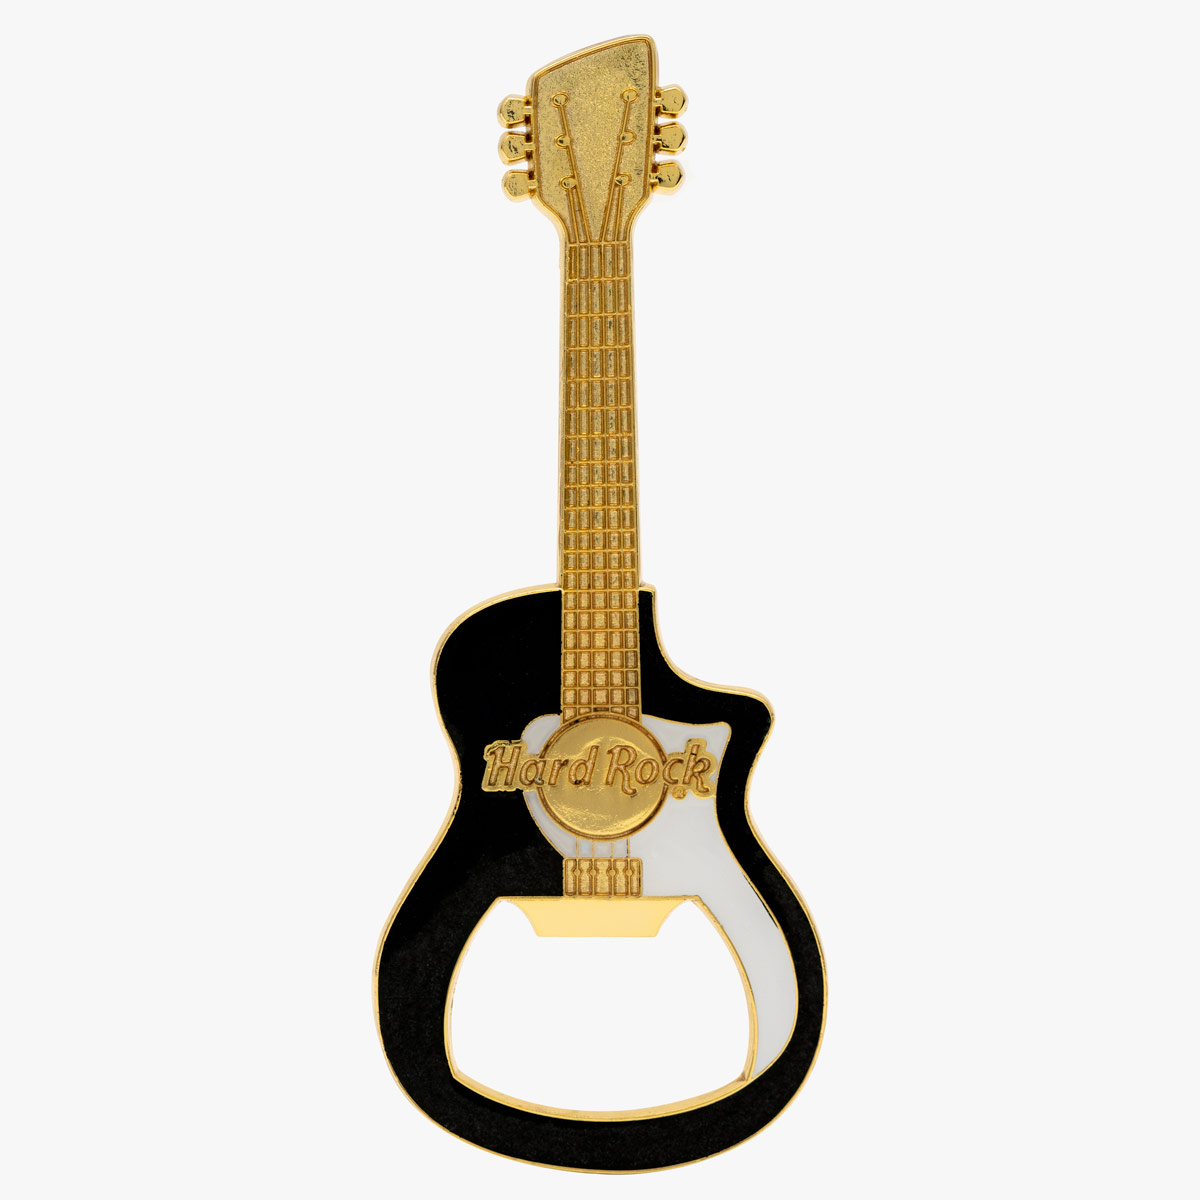 Hard Rock Metallic Guitar Bottle Opener Magnet in Black and Gold image number 1